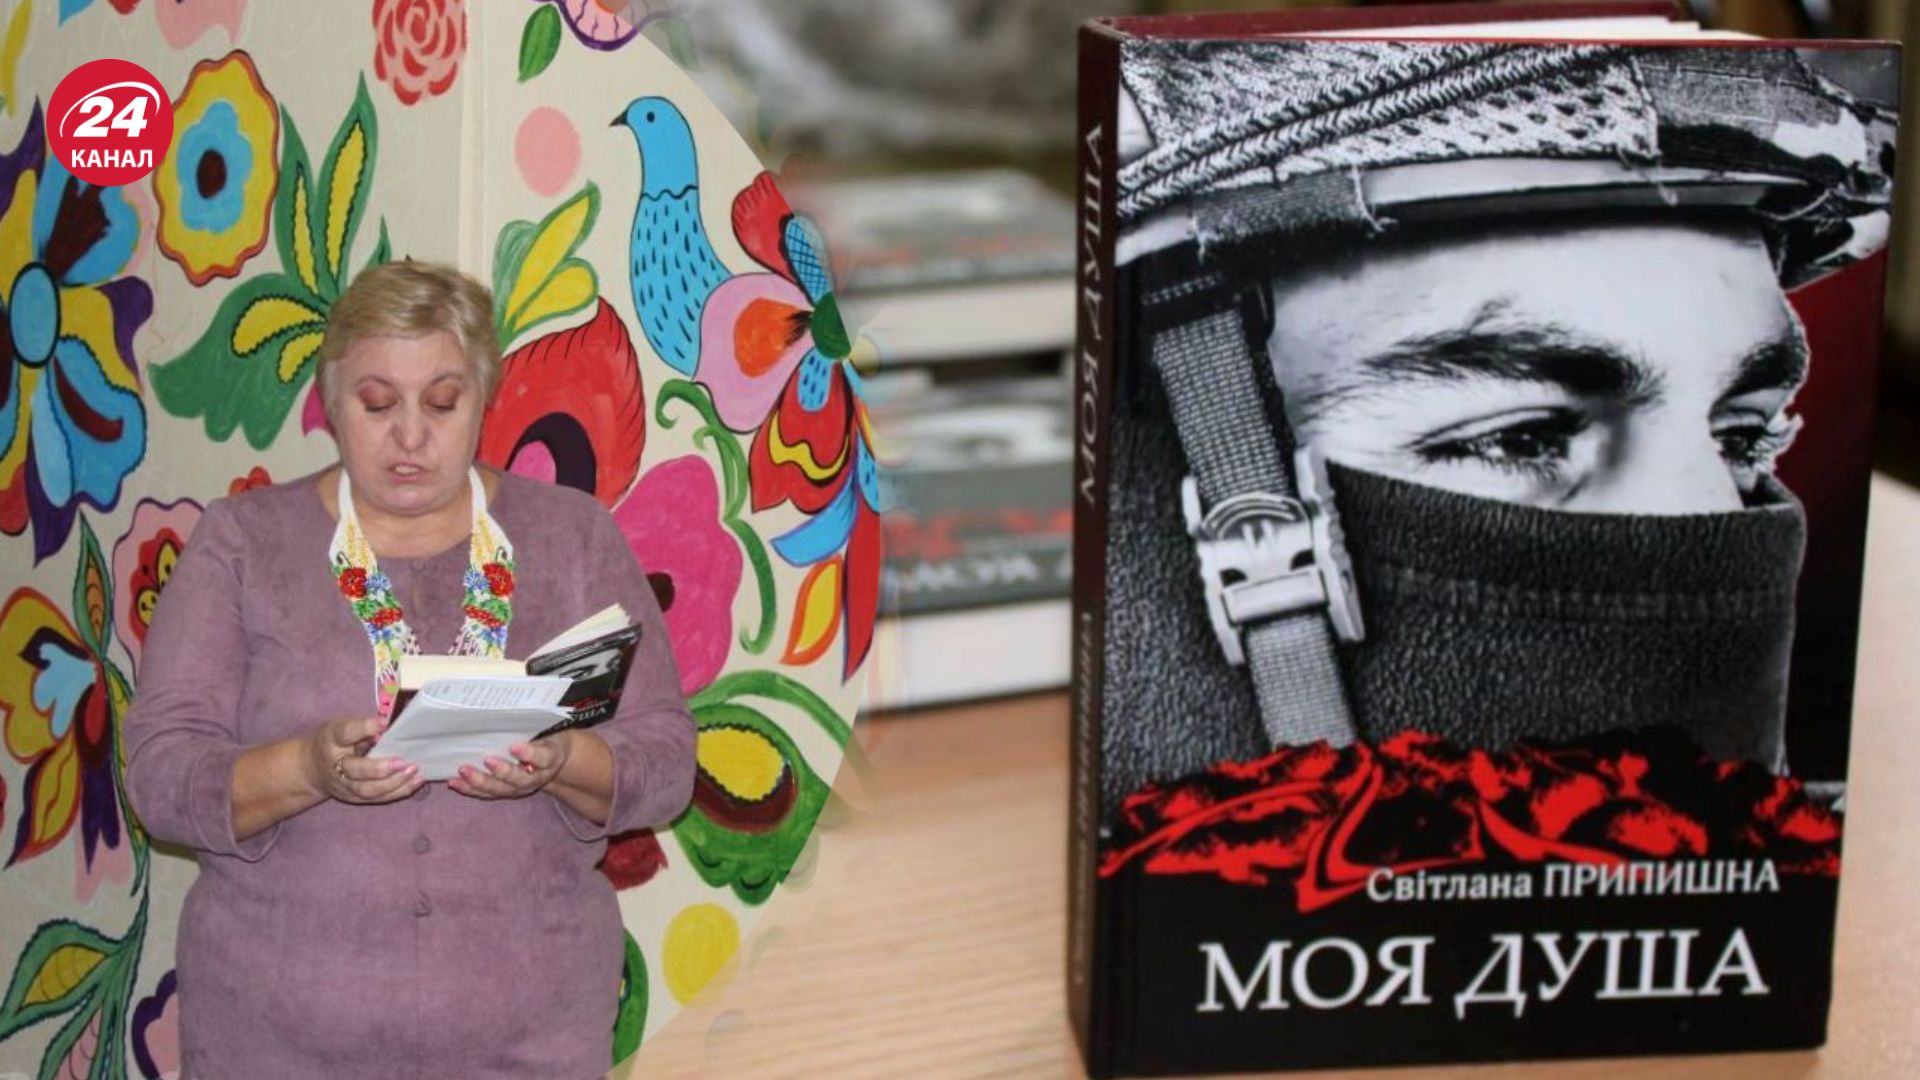 Светлана Припышная посвятила подборку стихов павшим бойцам